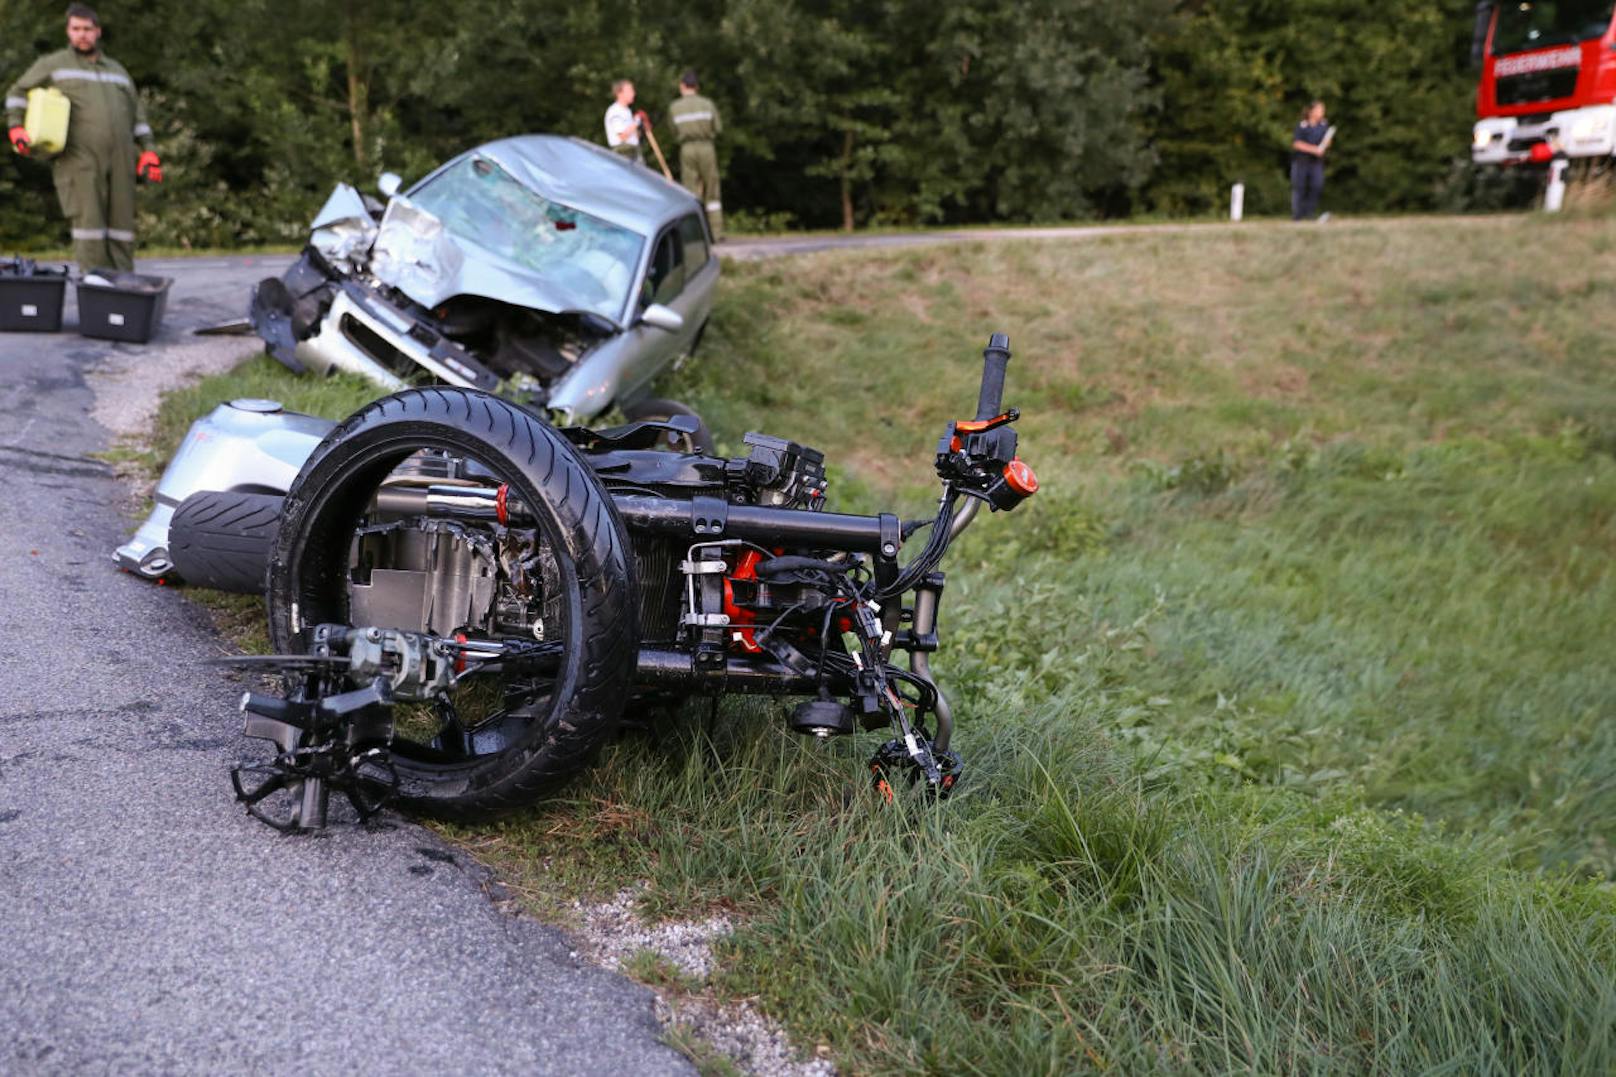 Bei einer schweren Kollision zwischen einem Motorrad und einem Pkw im Gemeindegebiet von Manning (Bz. Vöcklabruck) gab es einen Toten. Trotz Reanimationsversuchen kam für den Motorradlenker jede Hilfe zu spät.